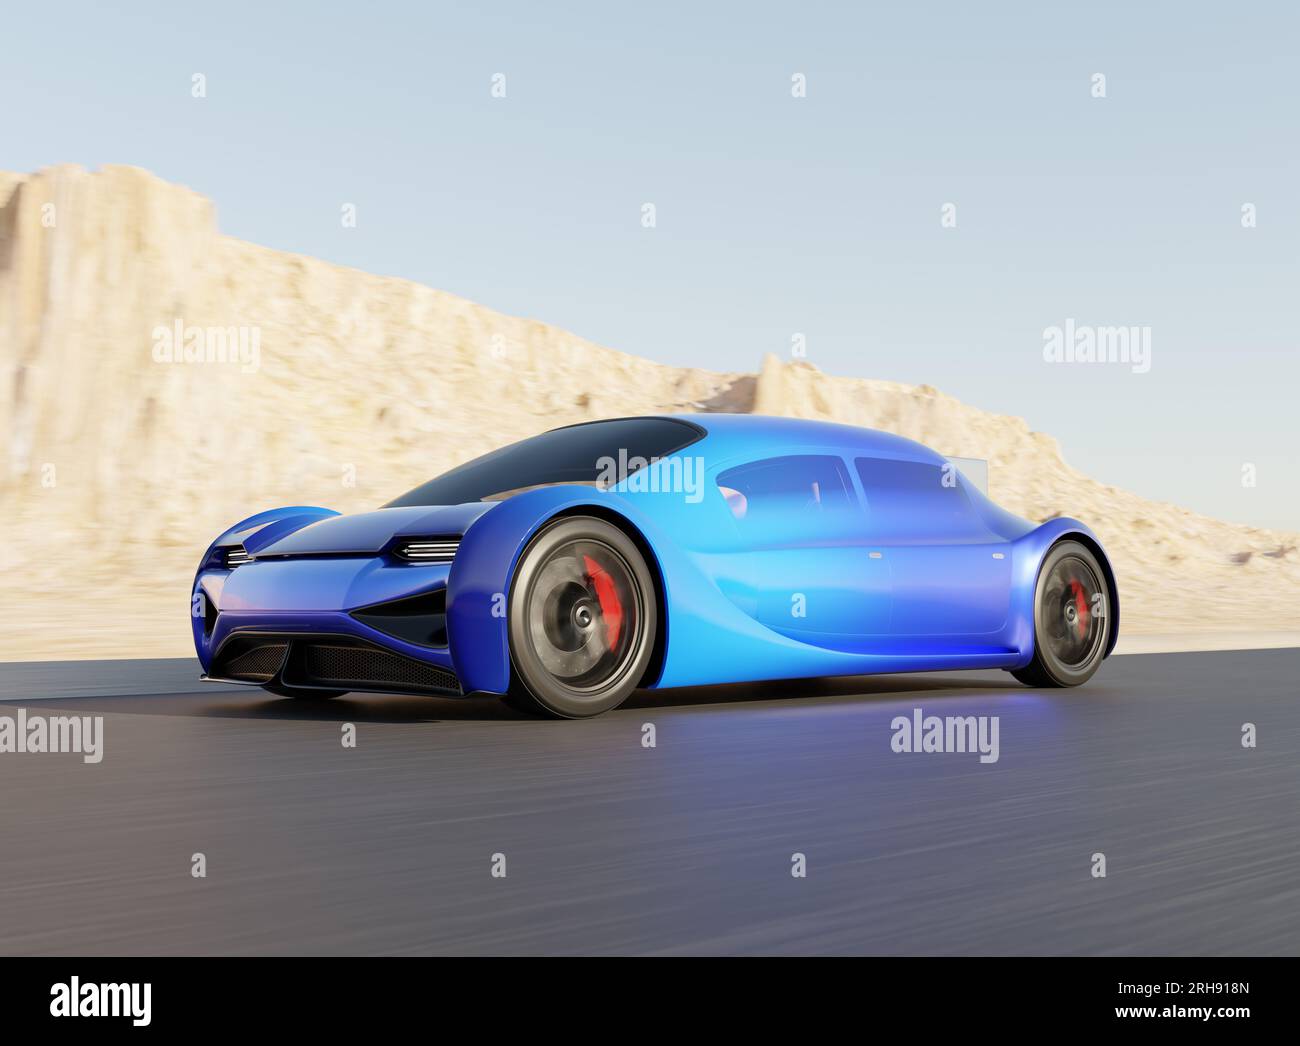 Voiture électrique bleue futuriste conduisant sur la route avec fond de désert. Conception générique, image de rendu 3D. Banque D'Images